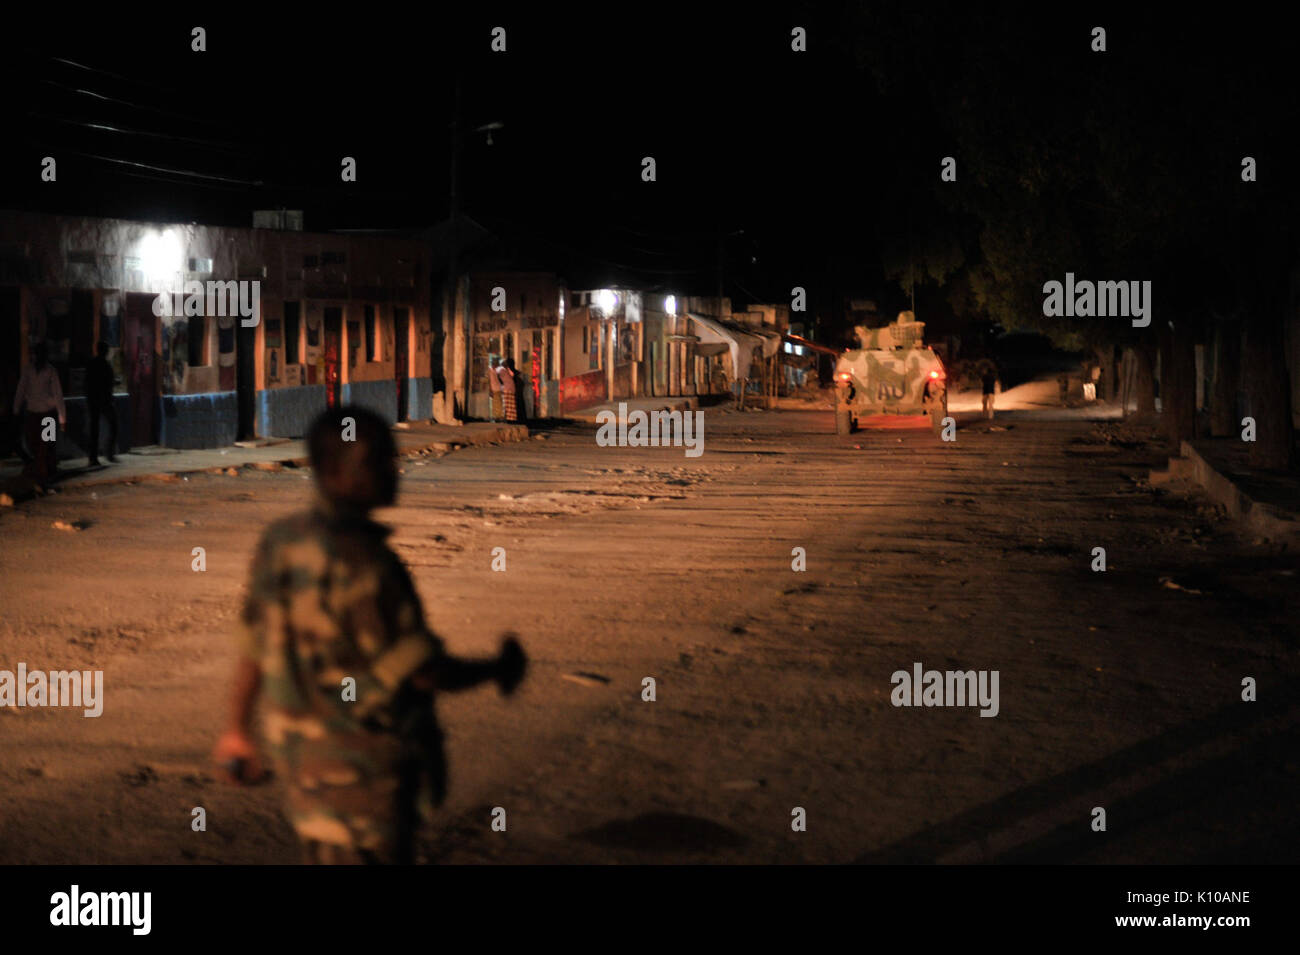 Un soldat éthiopien, dans le cadre de la Mission de l'Union africaine en Somalie, promenades à travers à Baidoa, en Somalie, le 22 juin au cours d'une patrouille de nuit dans la ville. Photo de l'AMISOM Tobin Jones (14332233820) Banque D'Images